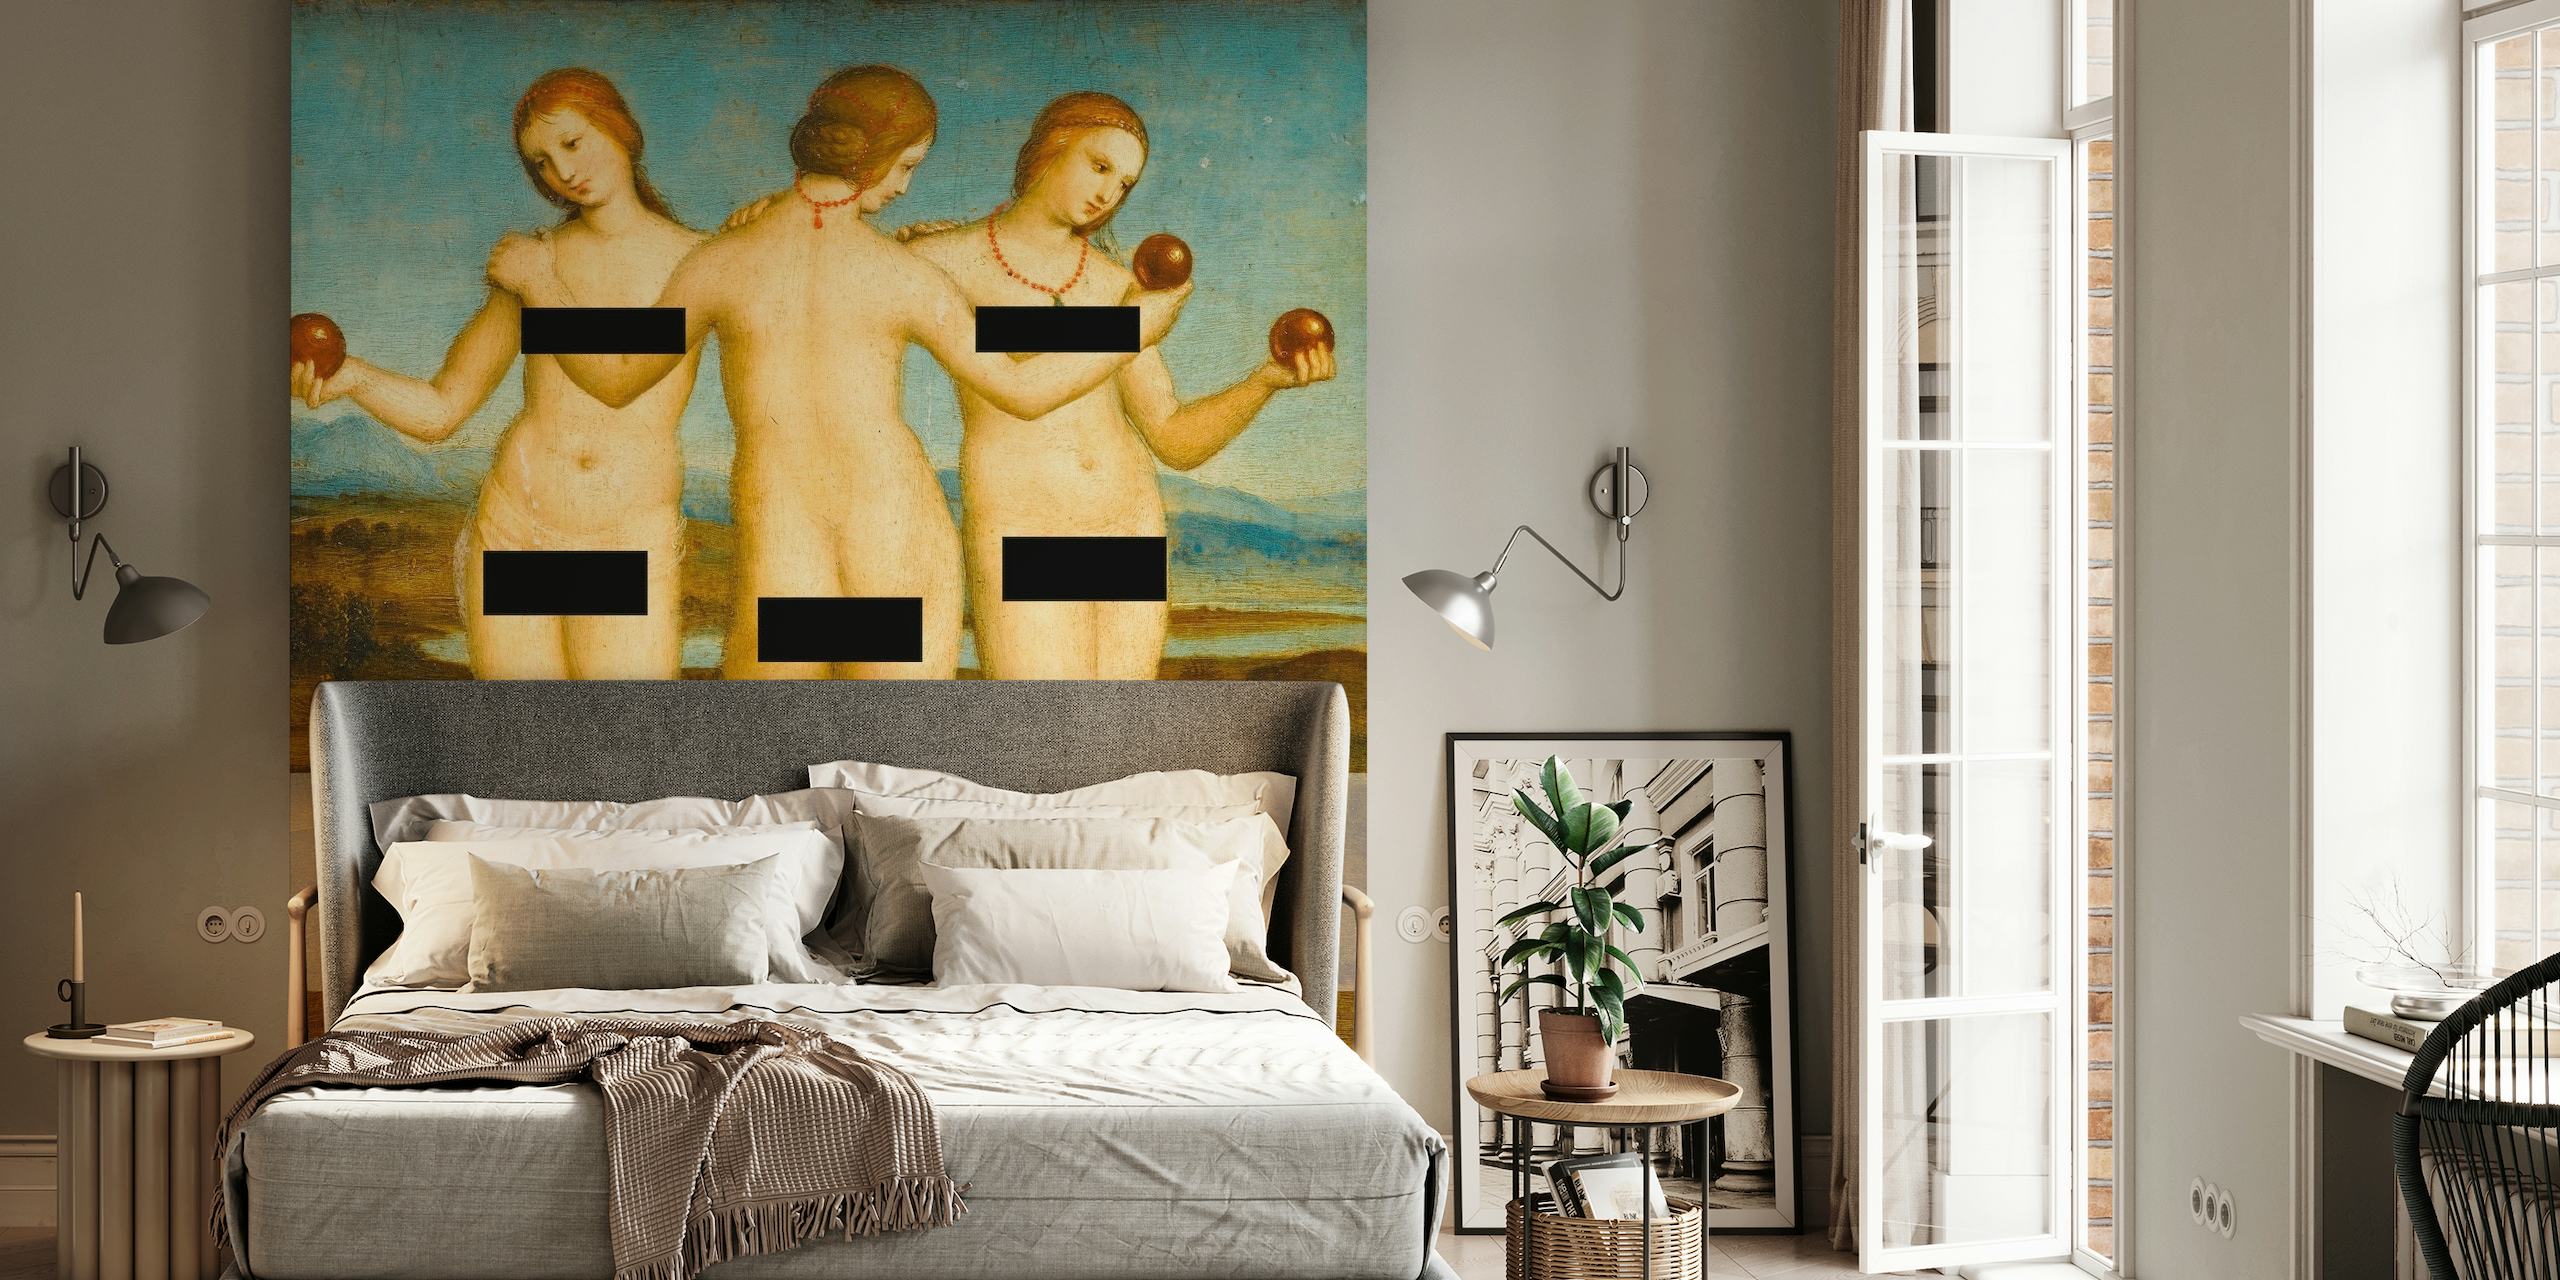 Gecensureerd beeld van de mythologische Drie Gratiën in een klassieke muurschildering voor interieurdecoratie